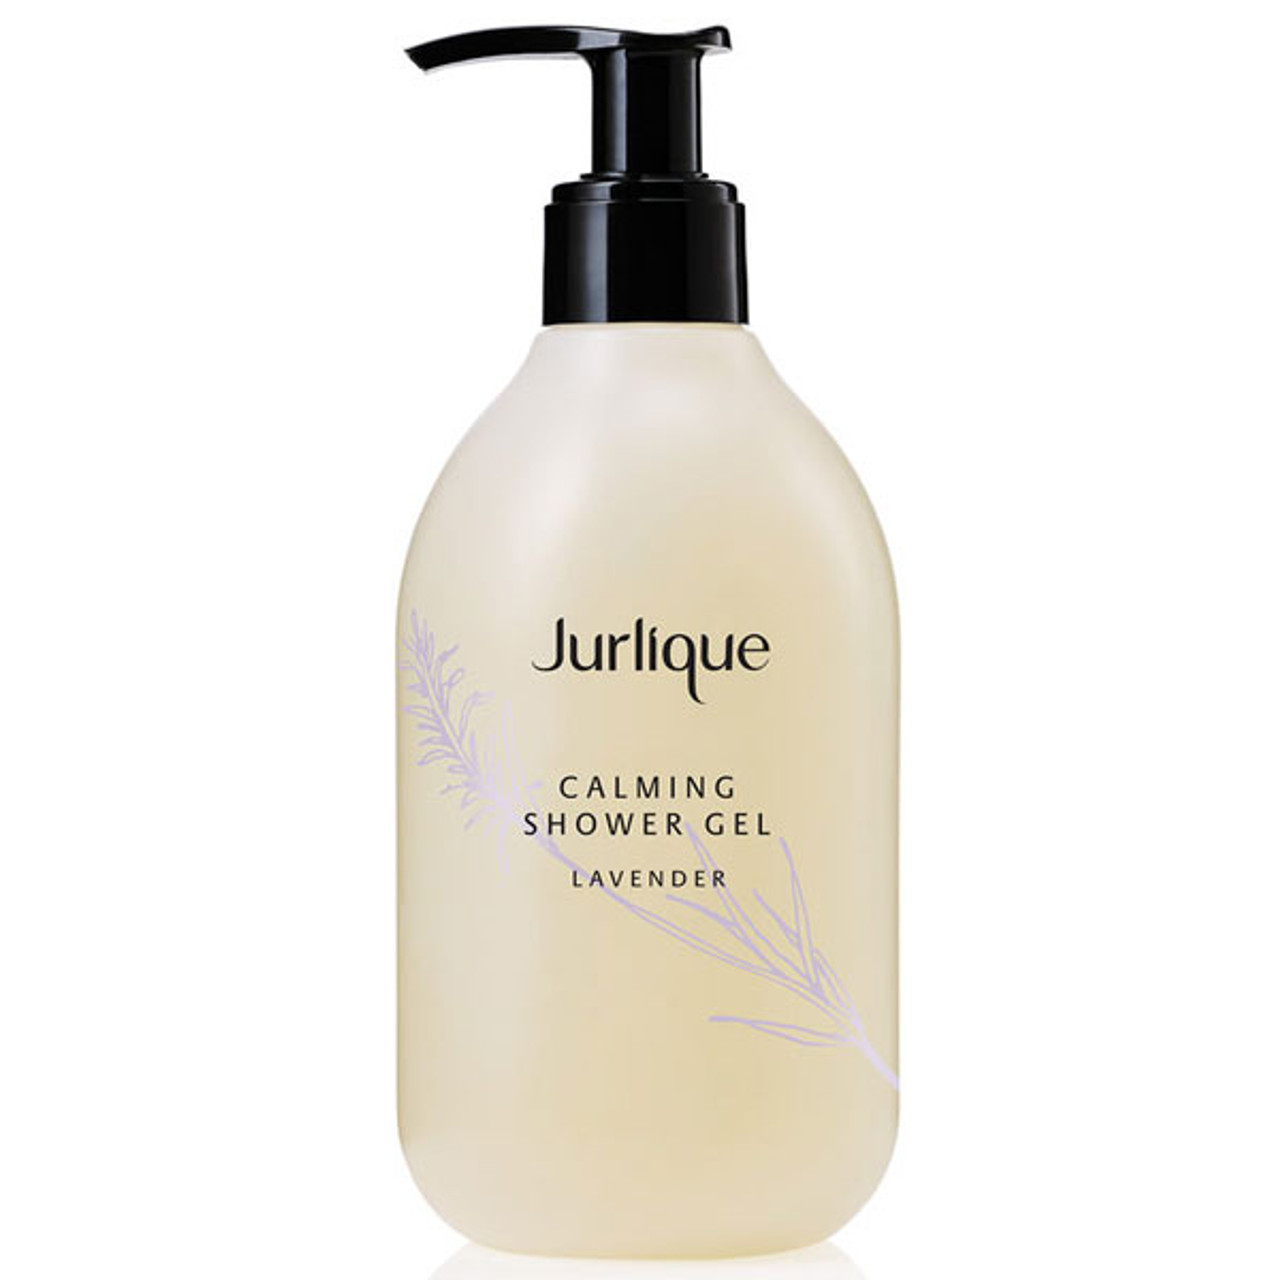 Jurlique Calming Shower Gel Lavender | Gentle Soap-Free